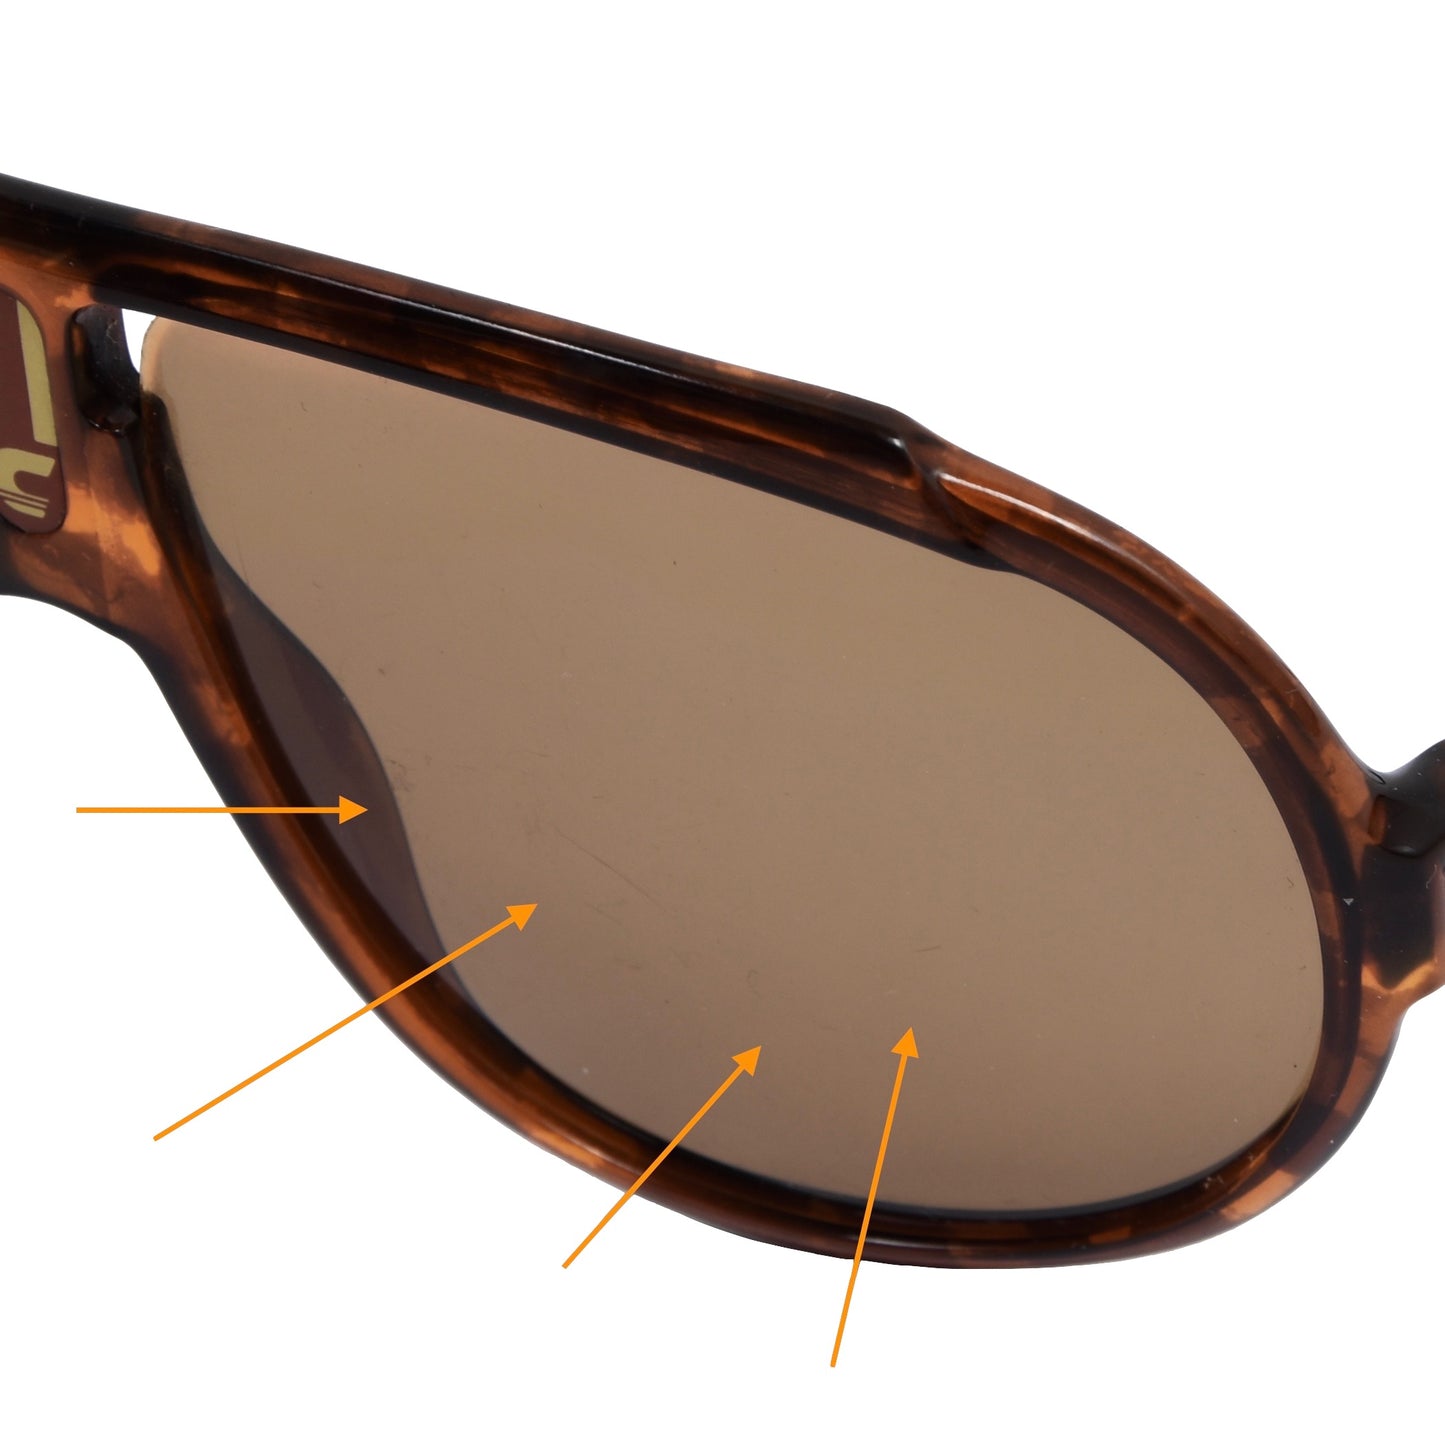 Carrera 5512 Miami Vice Sunglasses - Brown Tortoise